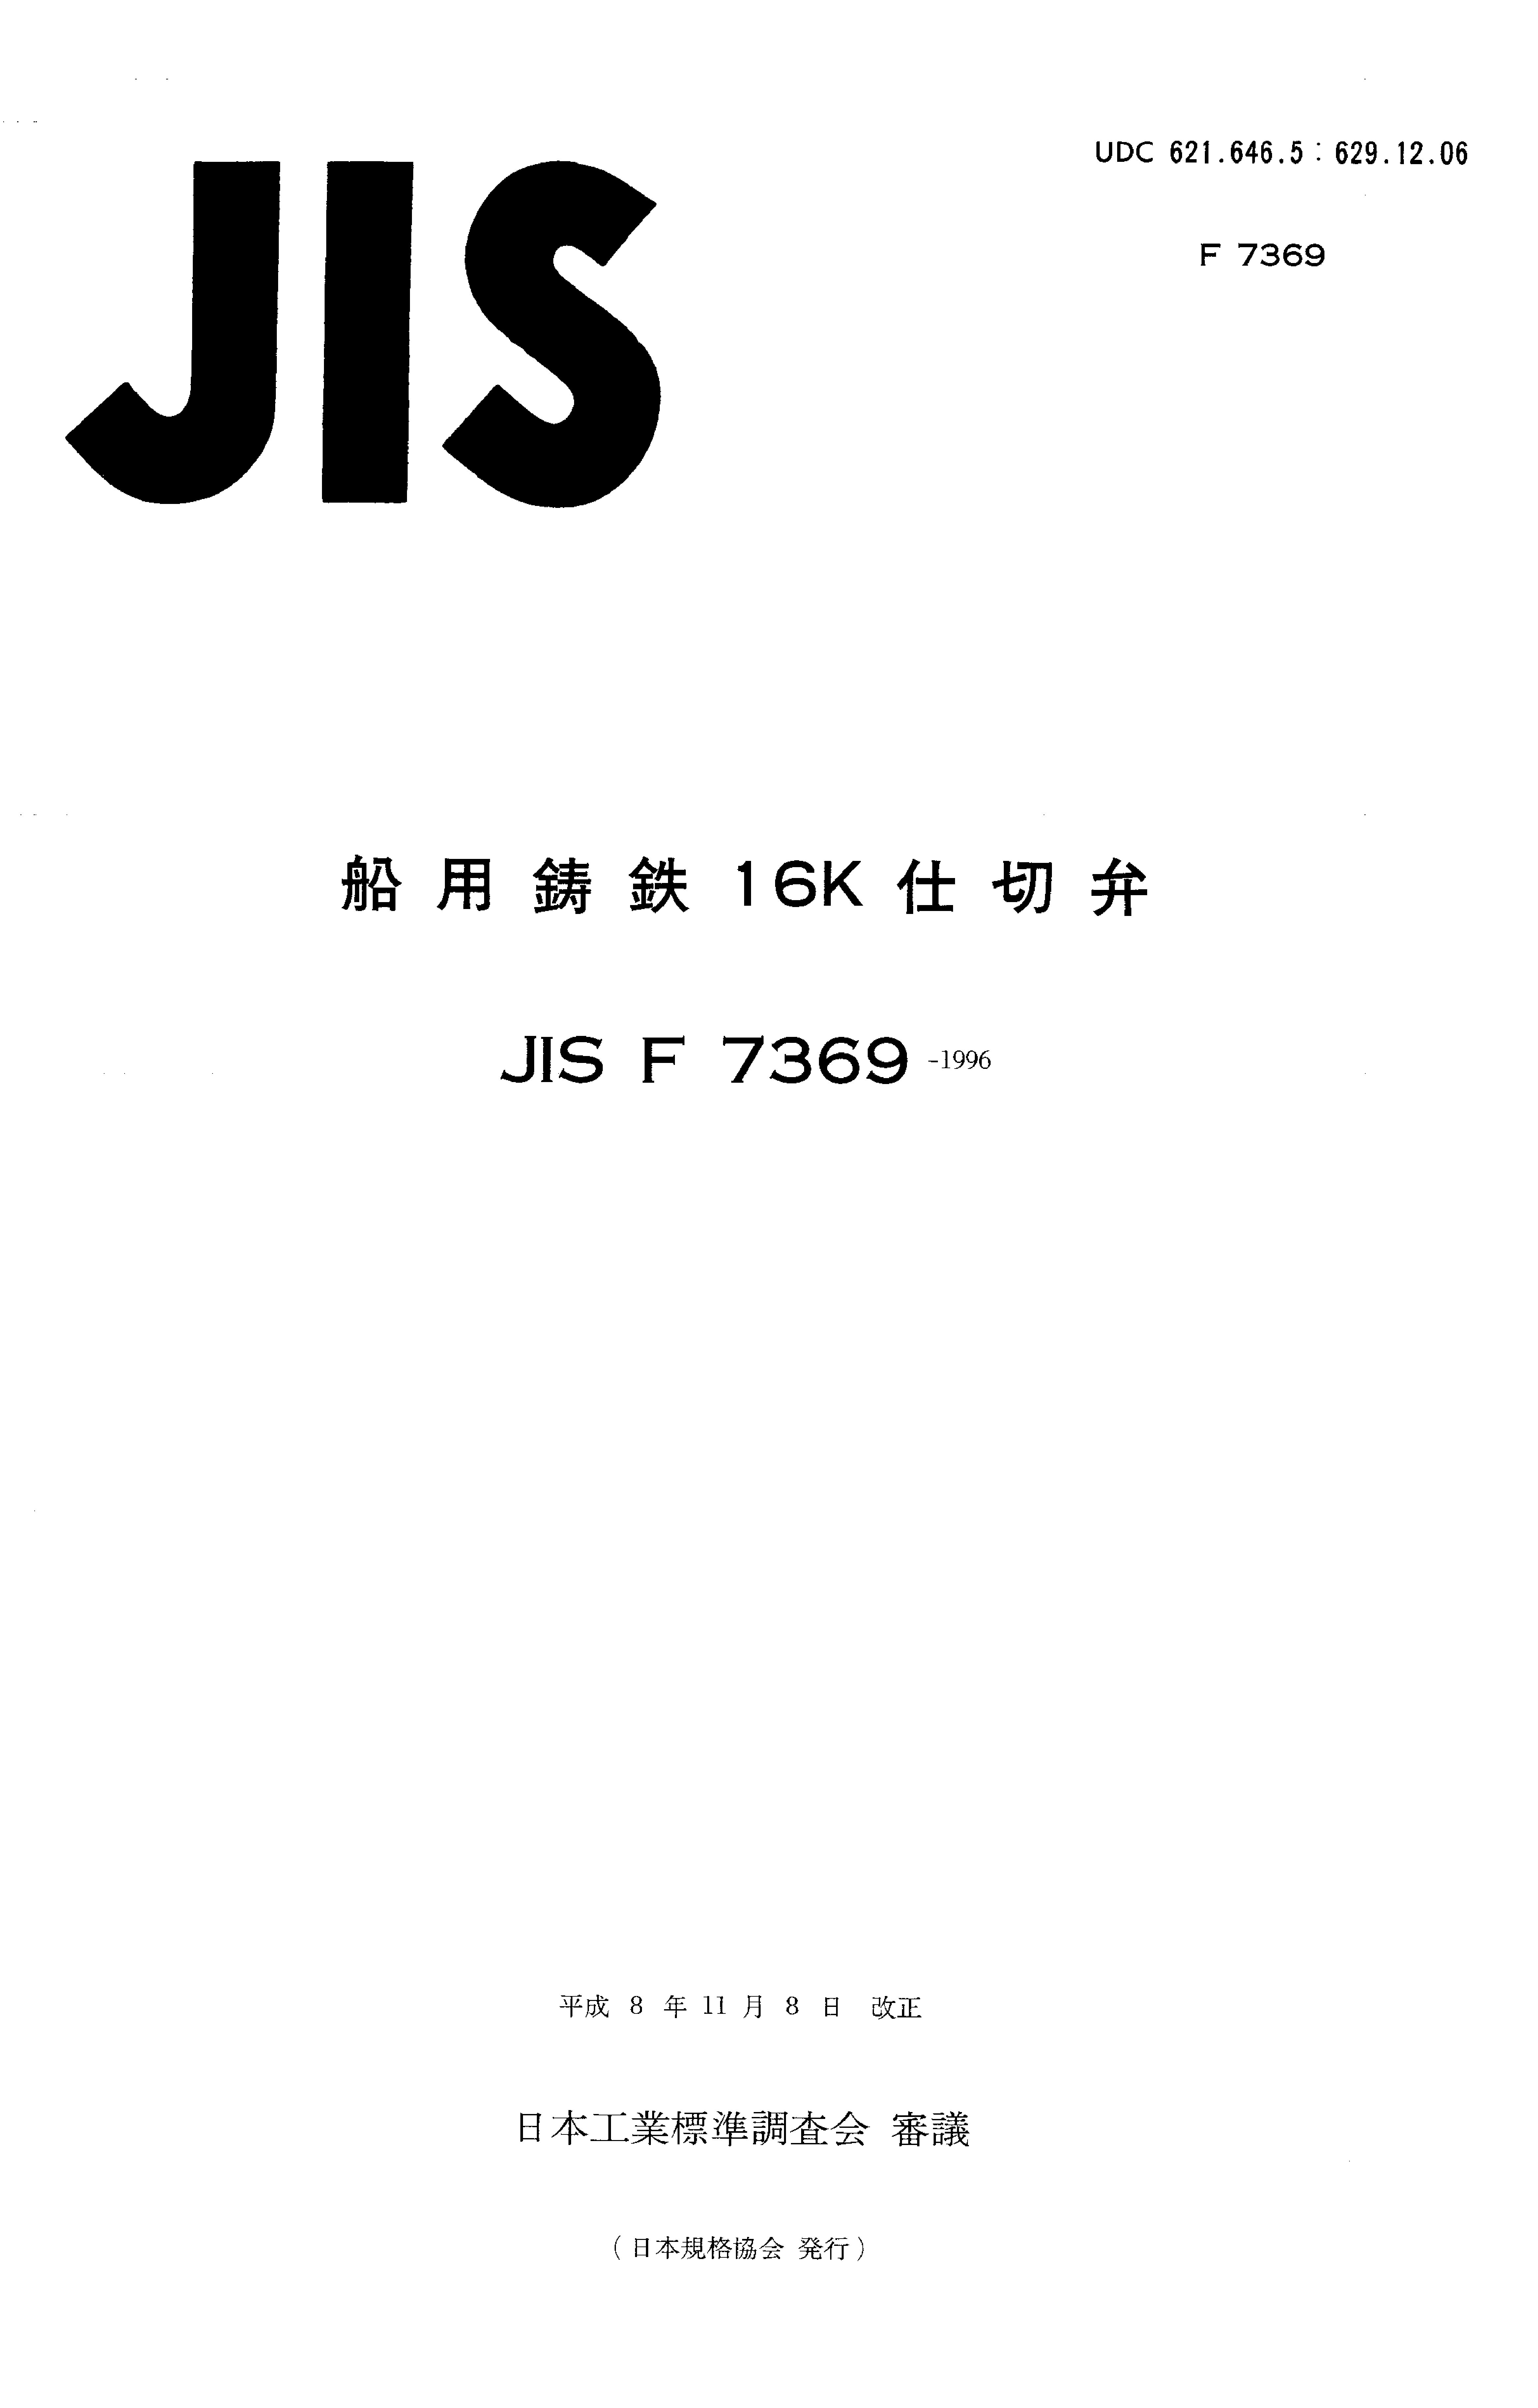 JIS F 7369:1996